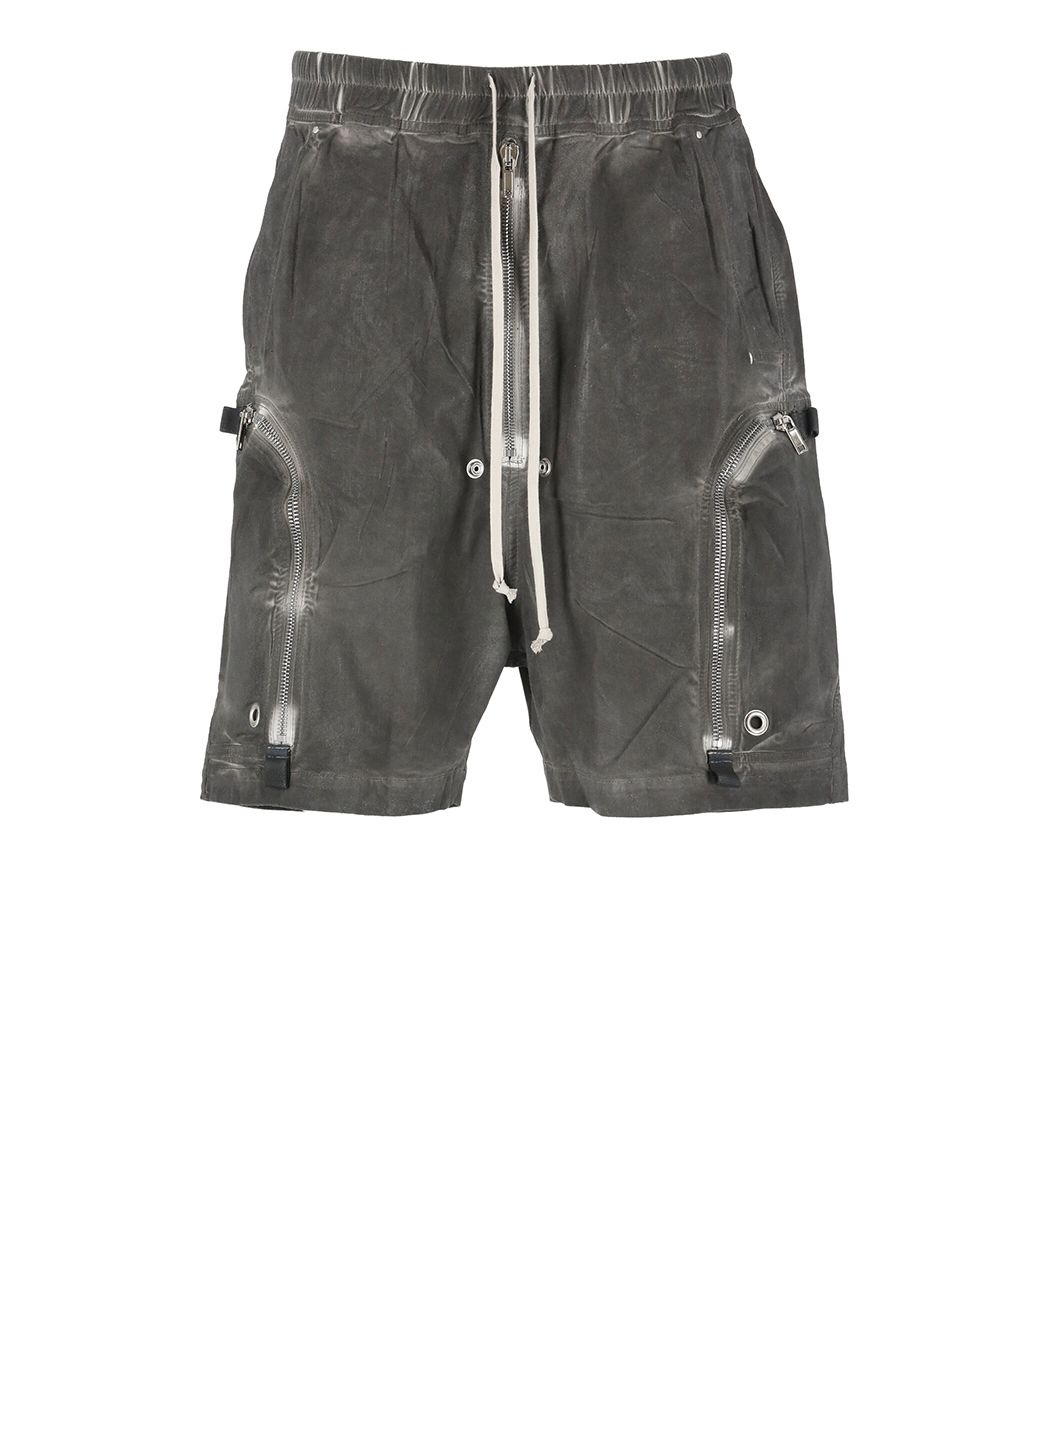 Bauhaus bermuda shorts